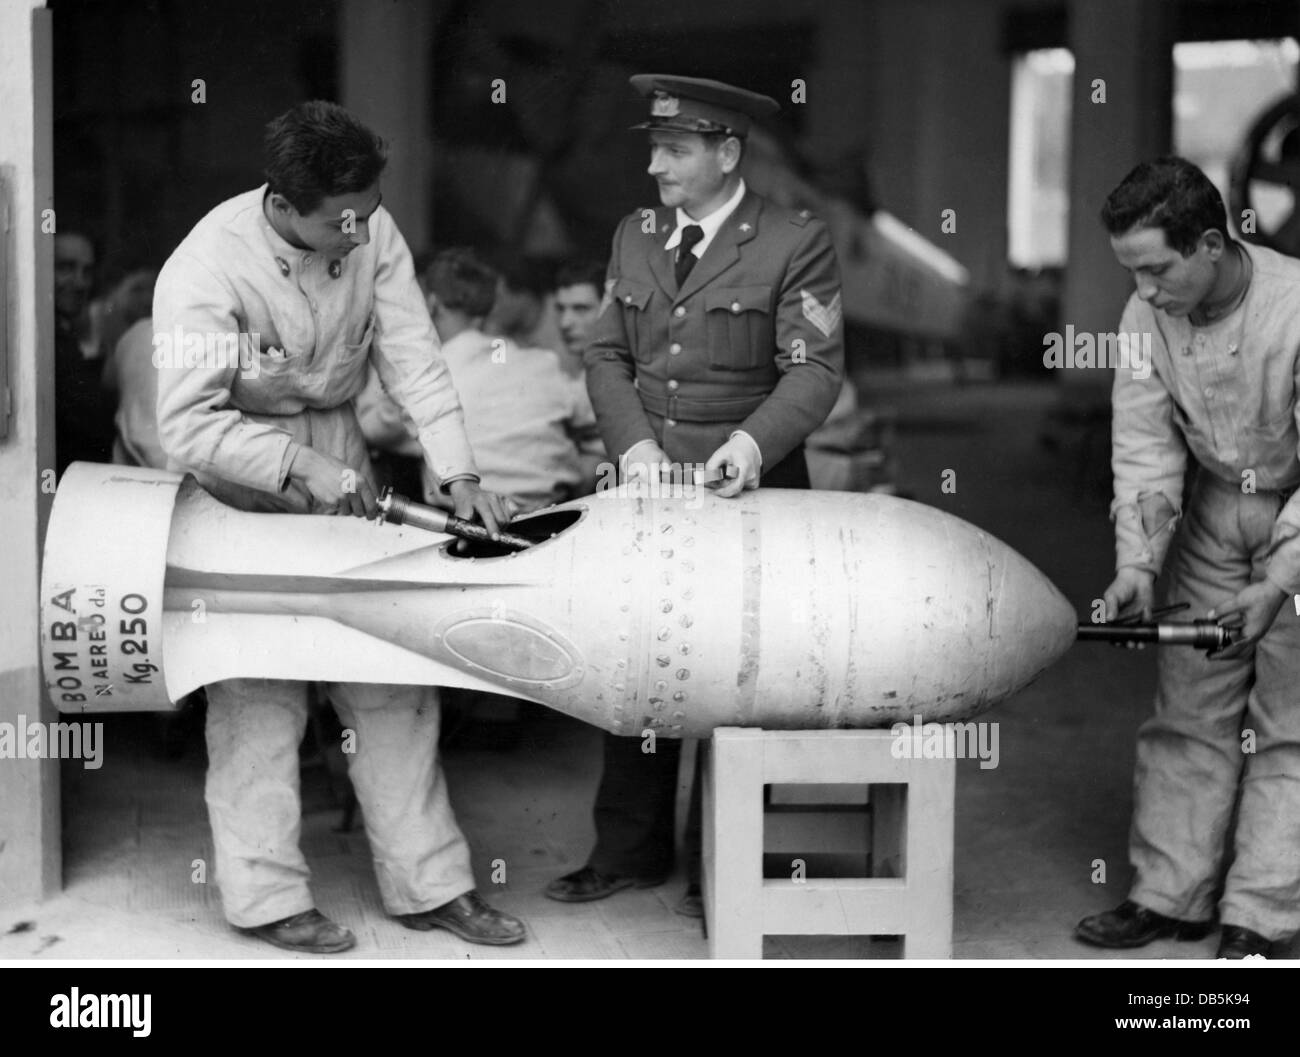 Militär, Italien, Luftwaffe, Flugschule der Regia Aeronautica, Unterricht mit 250 kg Bombe, 1930er Jahre, Zusatzrechte-Freimachungen-nicht vorhanden Stockfoto